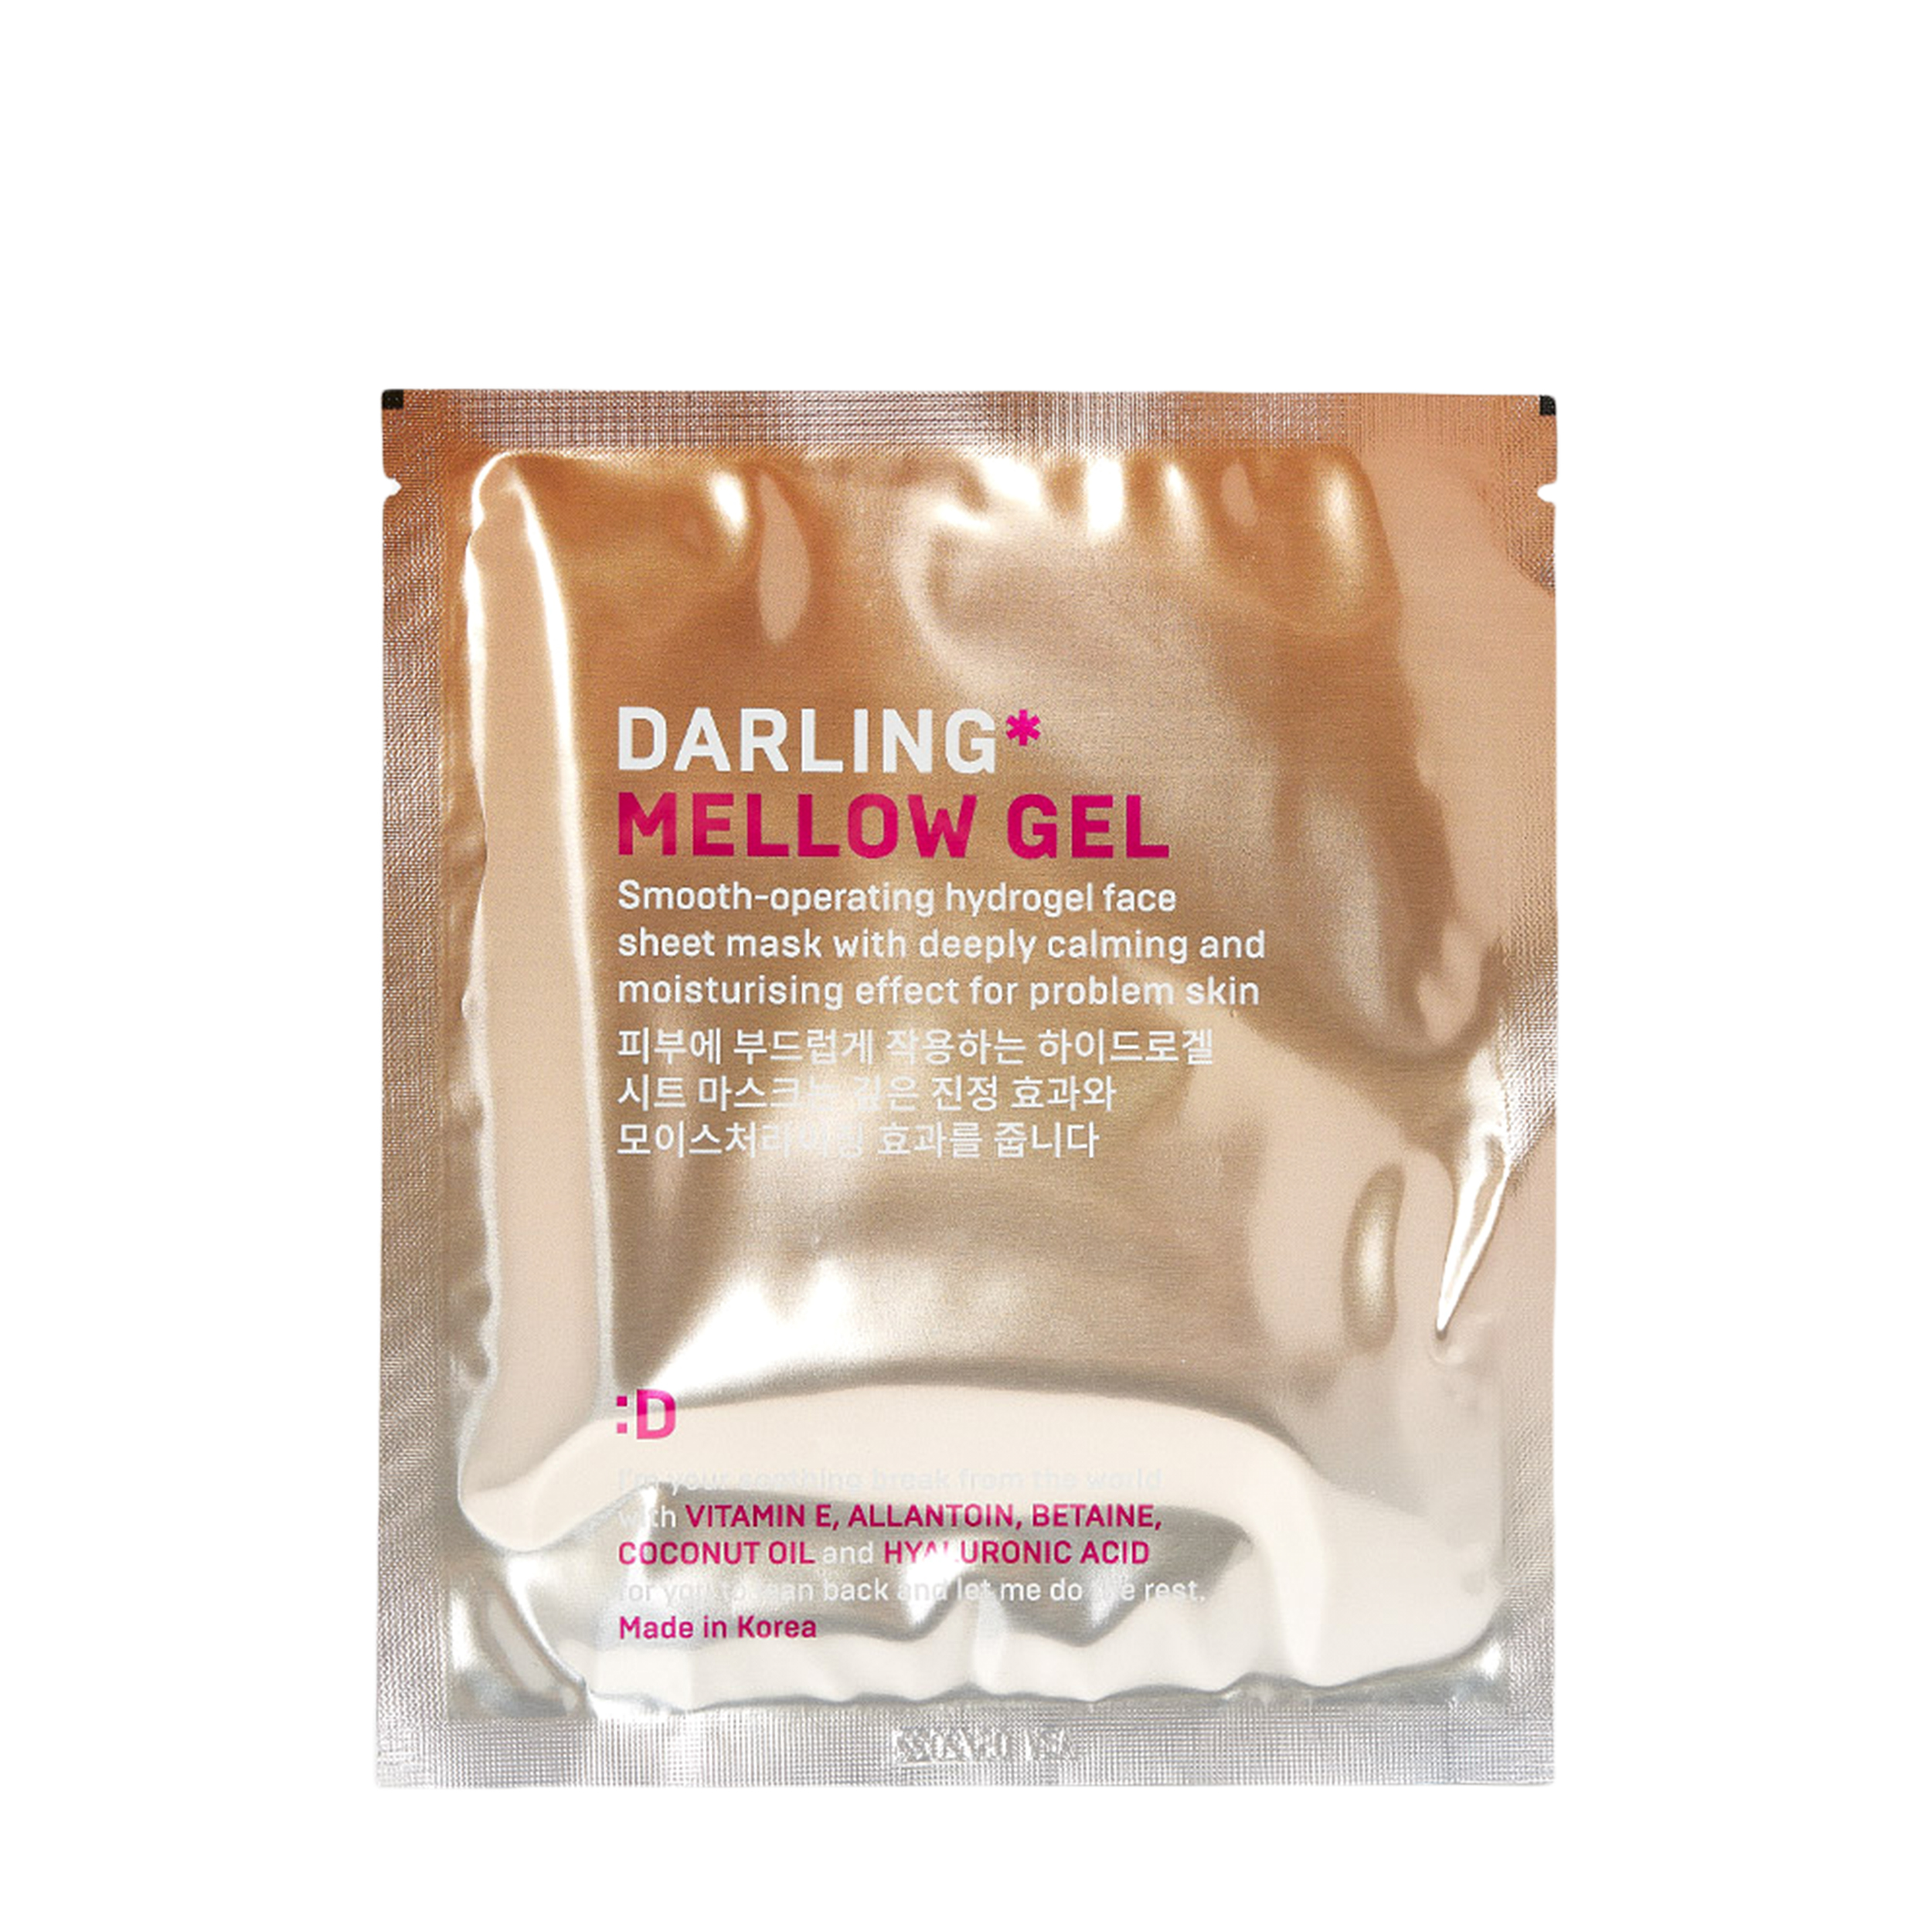 Darling Darling Успокаивающая гидрогелевая маска для проблемной кожи Mellow Gel